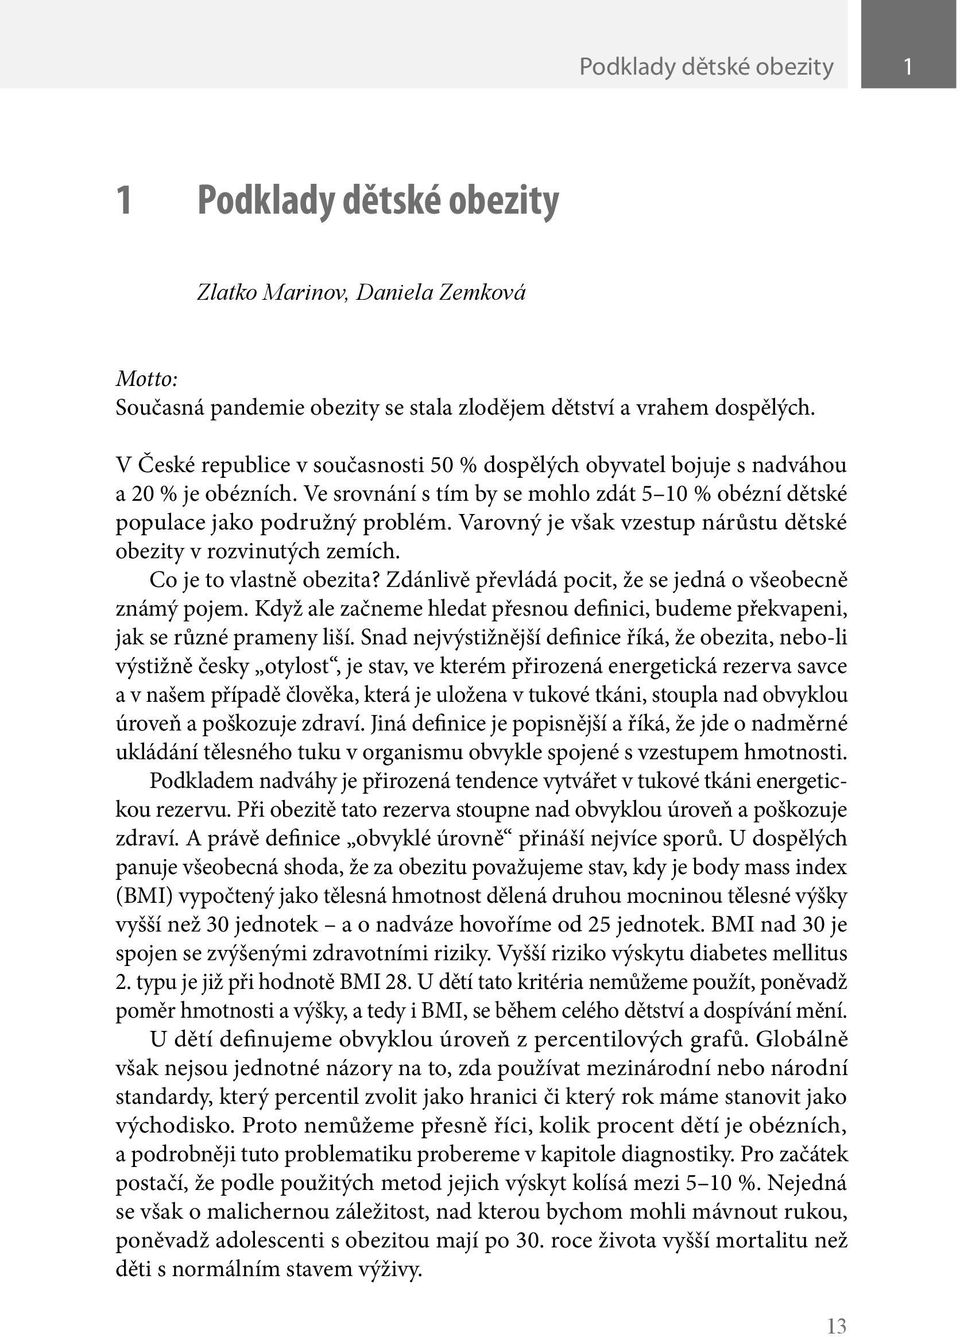 Varovný je však vzestup nárůstu dětské obezity v rozvinutých zemích. Co je to vlastně obezita? Zdánlivě převládá pocit, že se jedná o všeobecně známý pojem.